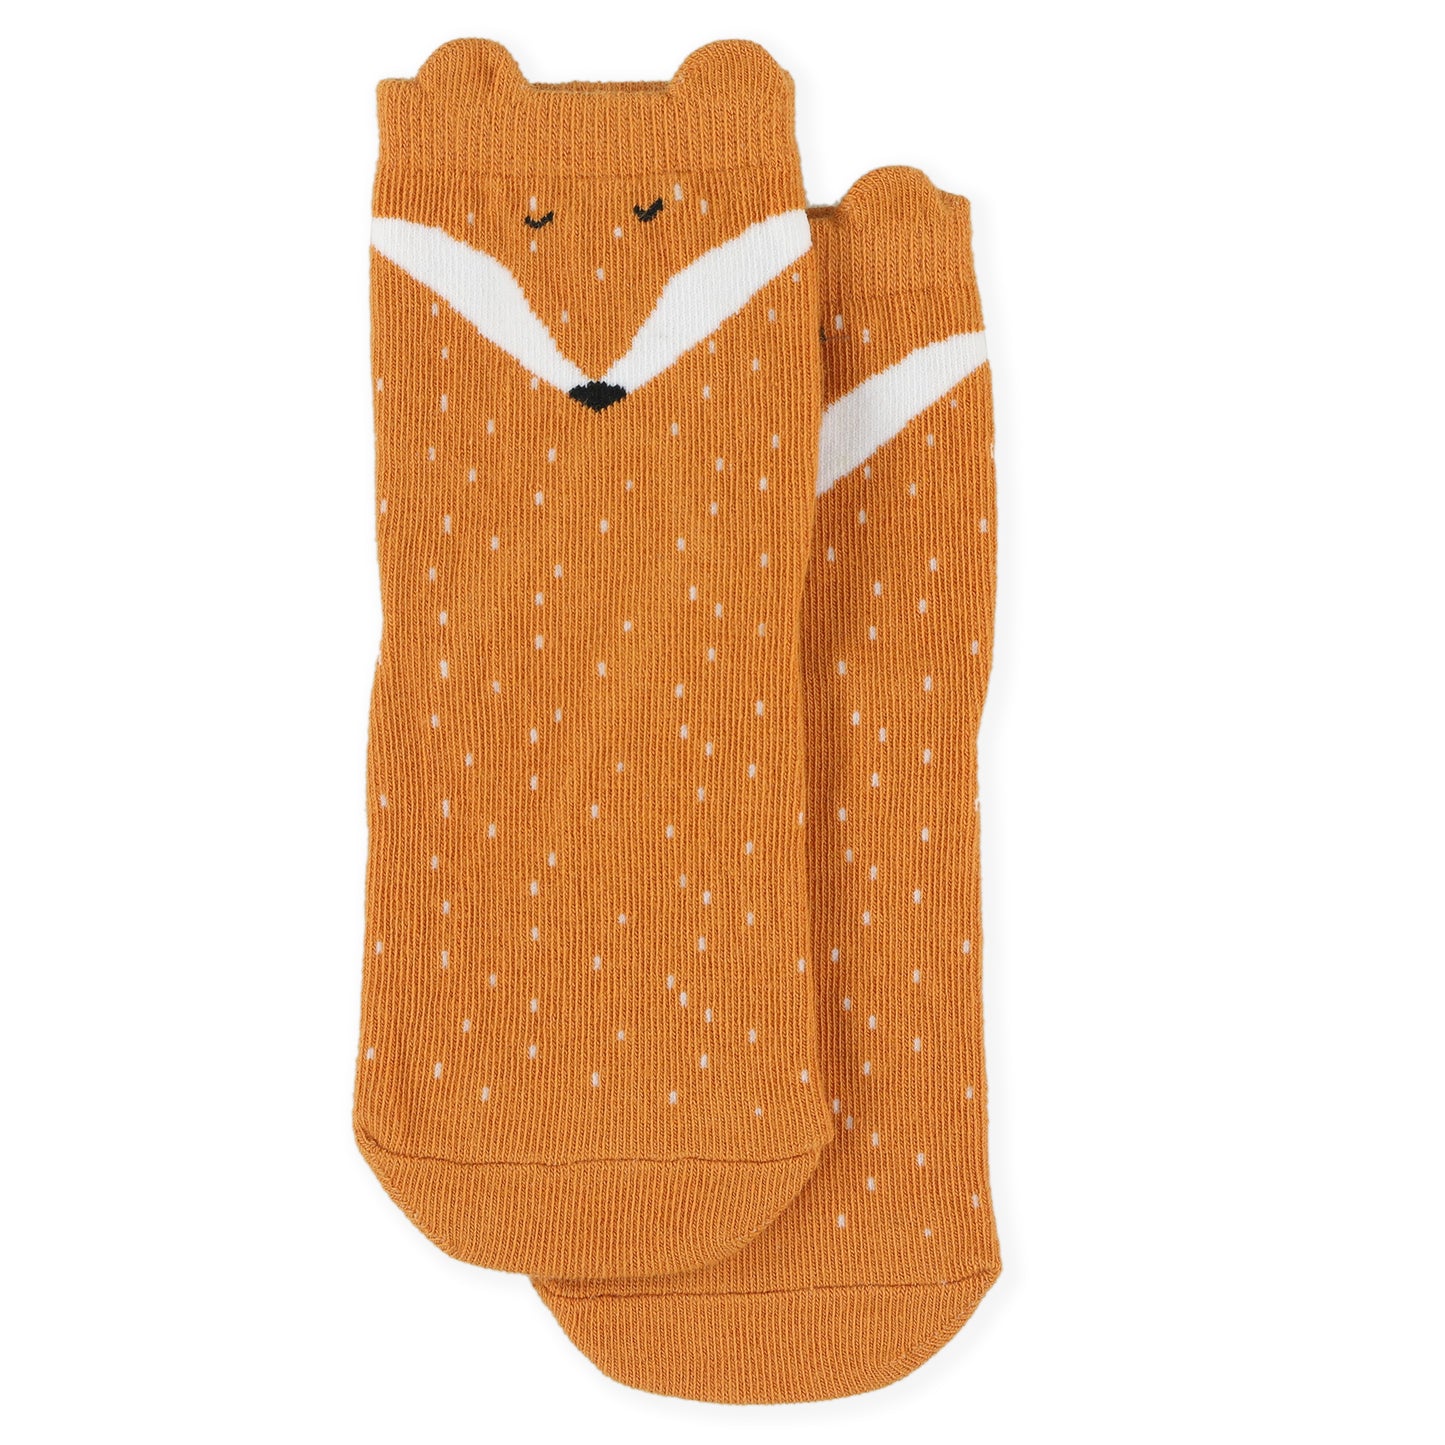 Socks 2-pack  All Sizes- Mr. Fox